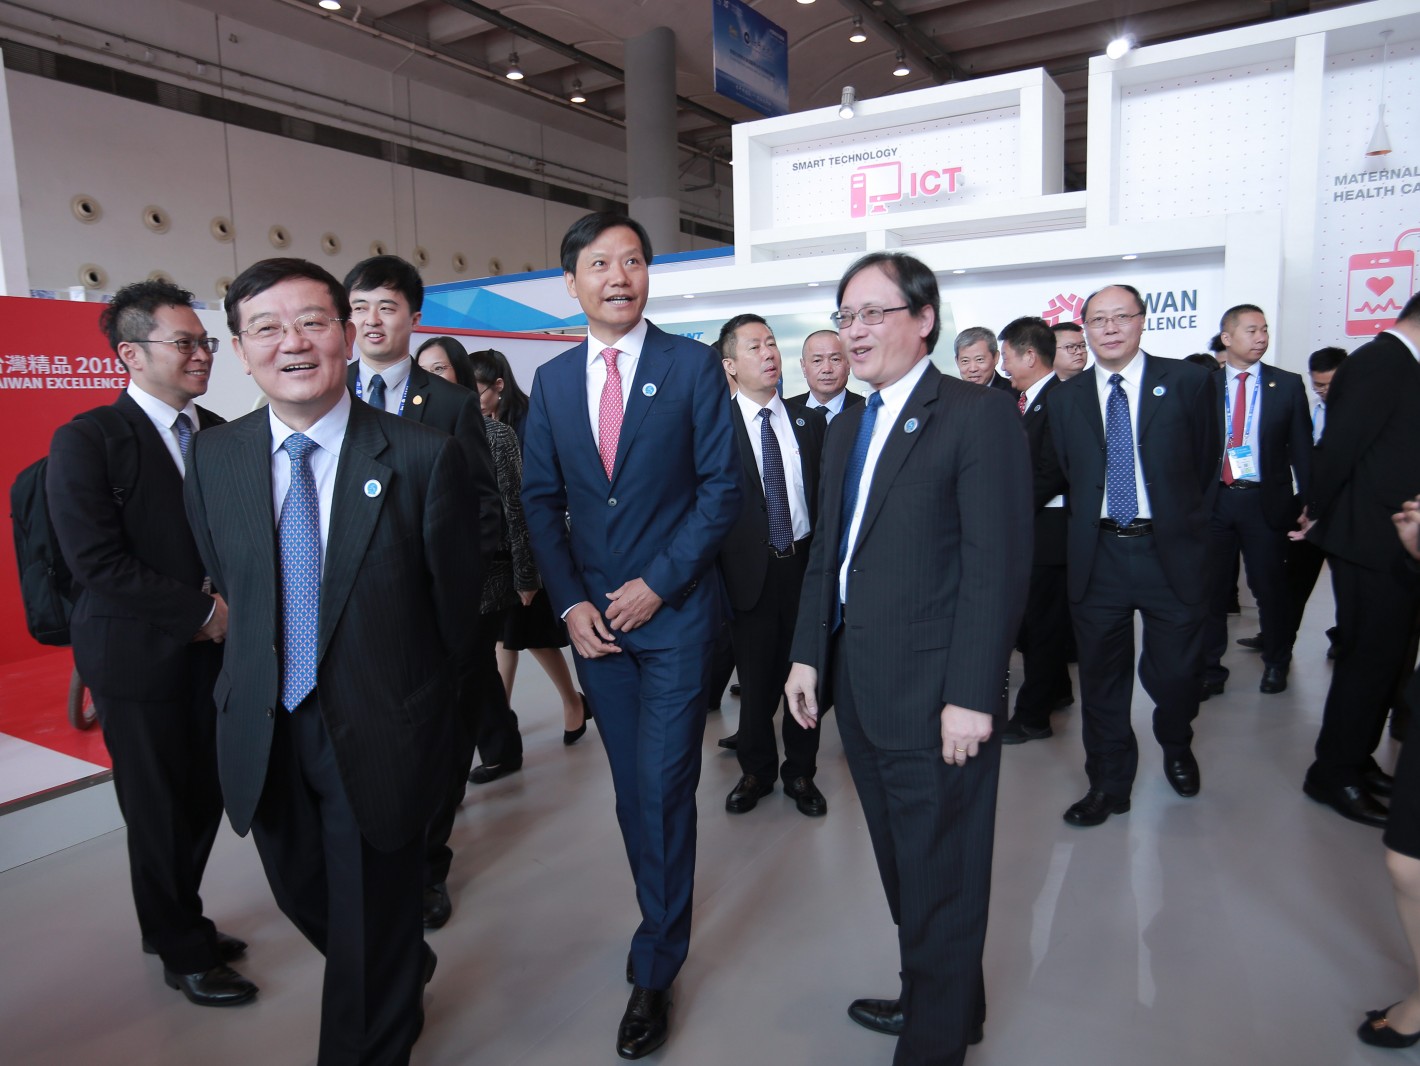 中国全国工商联党组书记徐乐江(左2)小米总裁雷军(左3)与广西工商联代表参观台湾精品